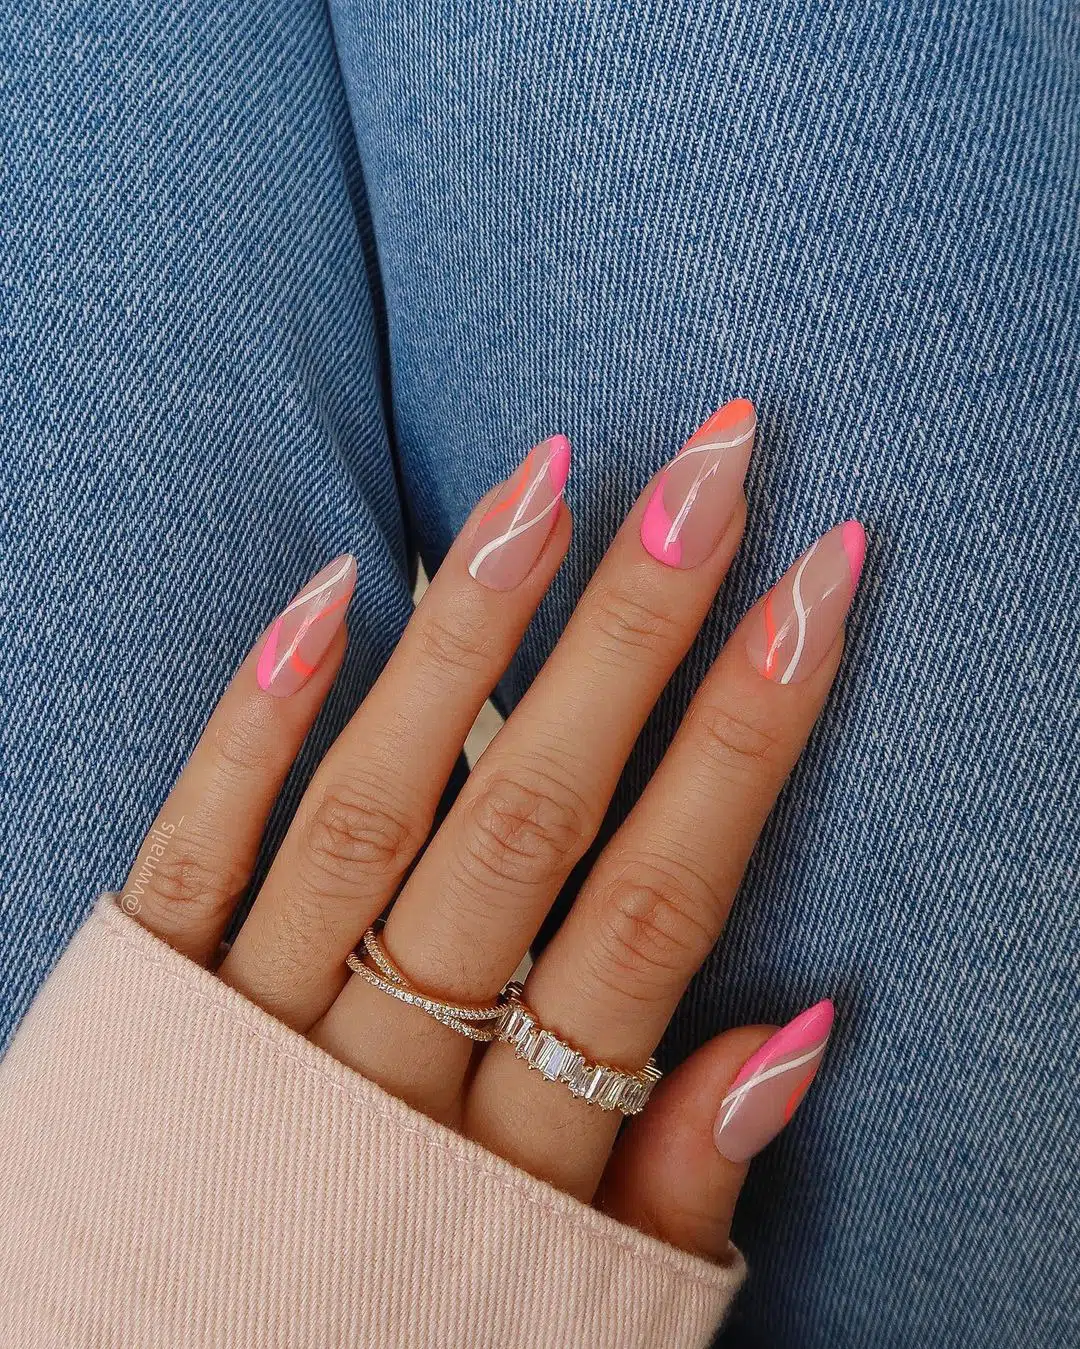 Розово-оранжевый маникюр с белыми линиями на длинных миндальных ногтях